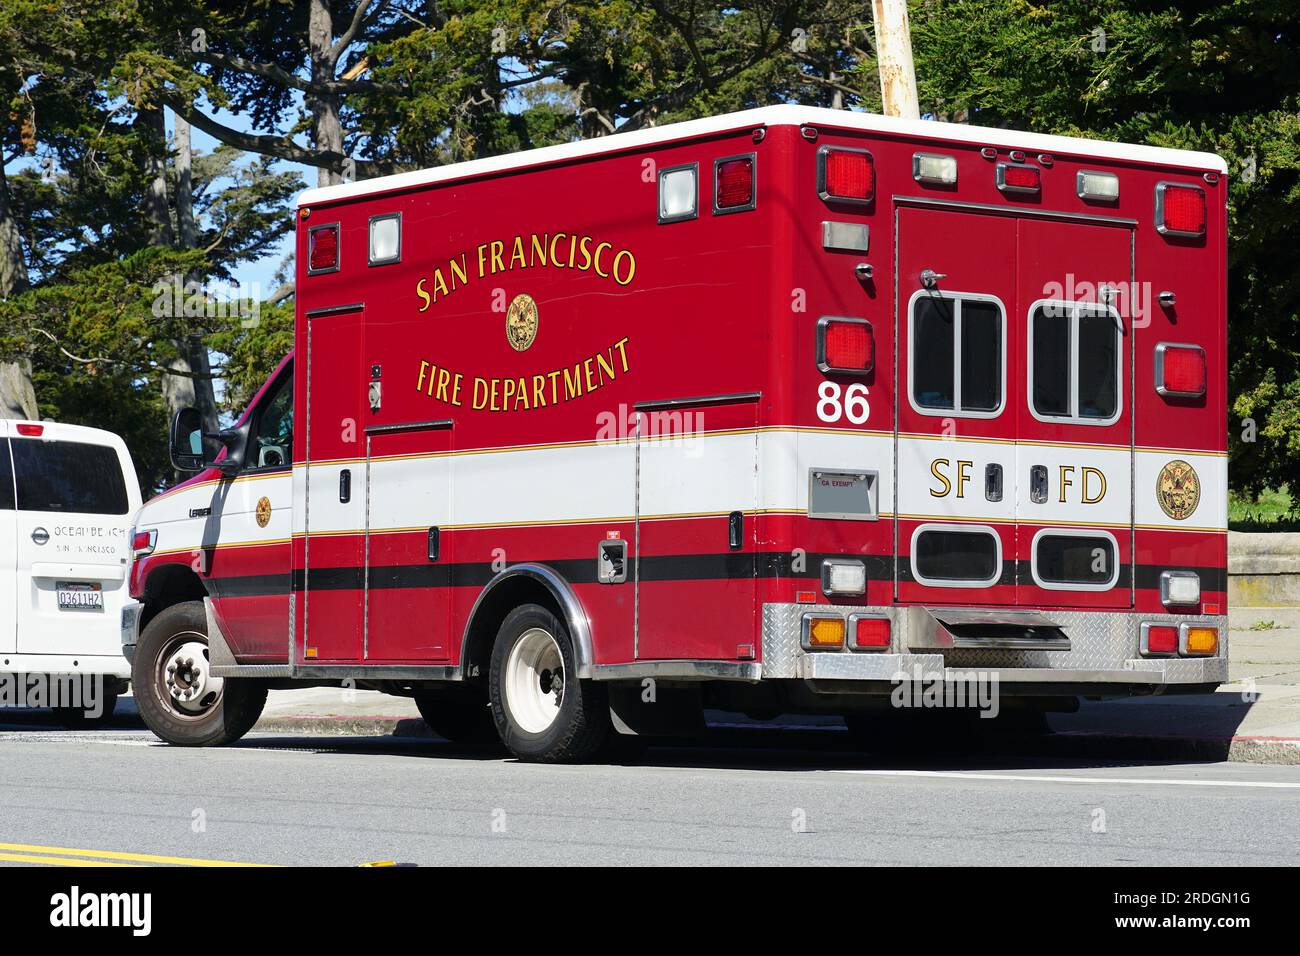 Voiture ambulance du service d'incendie, San Francisco, Californie, États-Unis, Amérique du Nord Banque D'Images